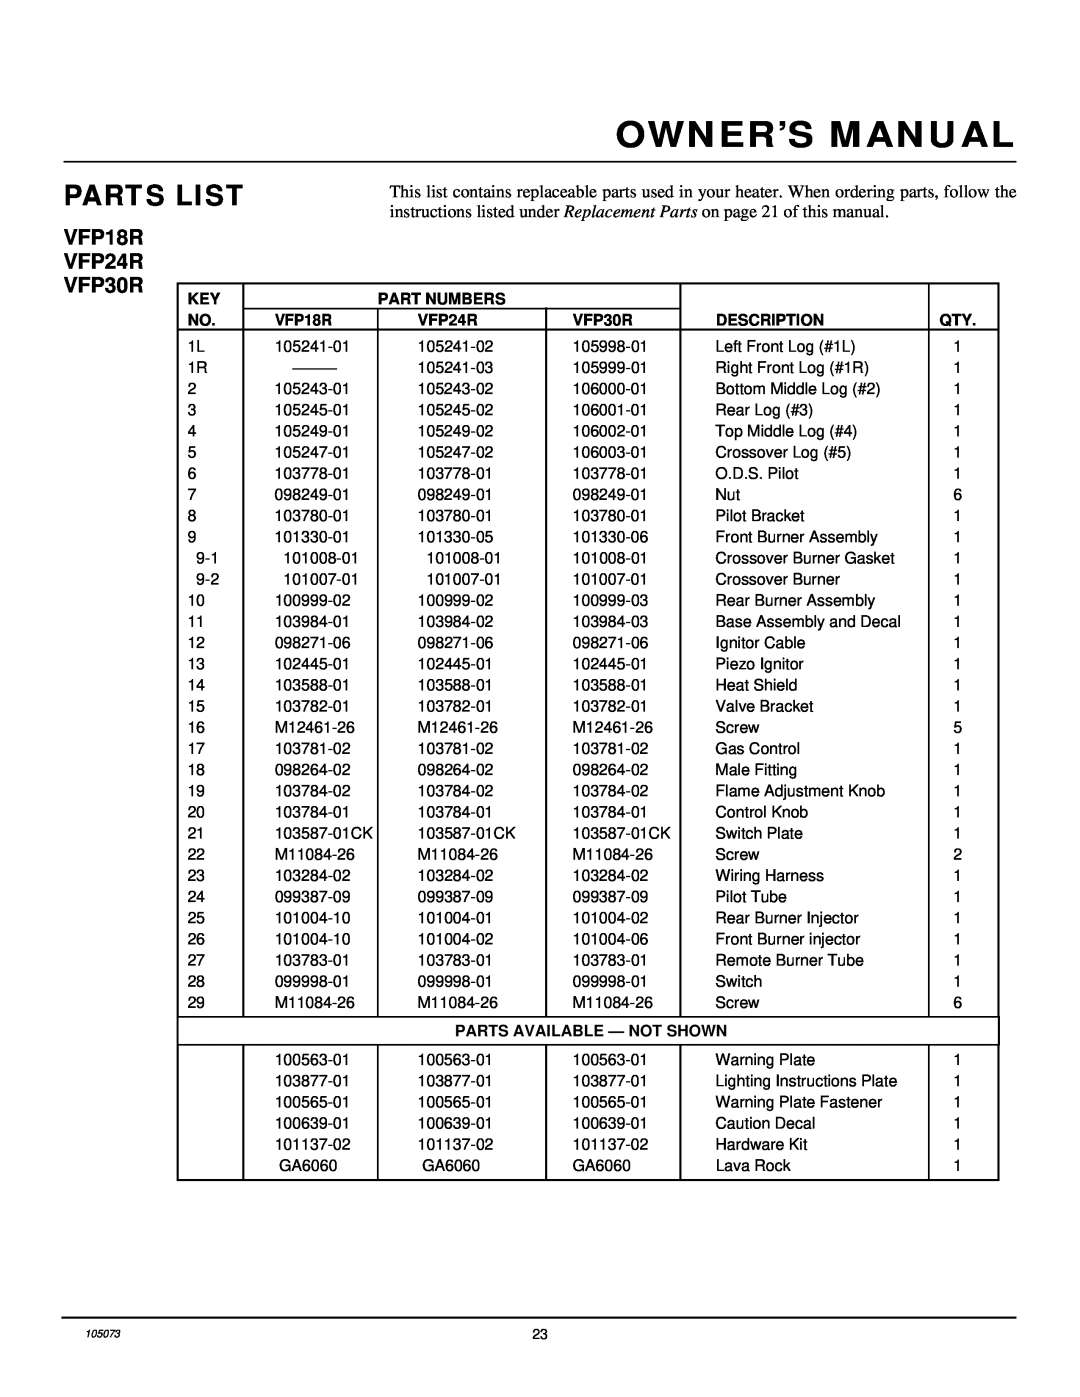 Desa VFP24R installation manual Parts List, Part Numbers, VFP18R, VFP30R, Description, Parts Available - Not Shown 